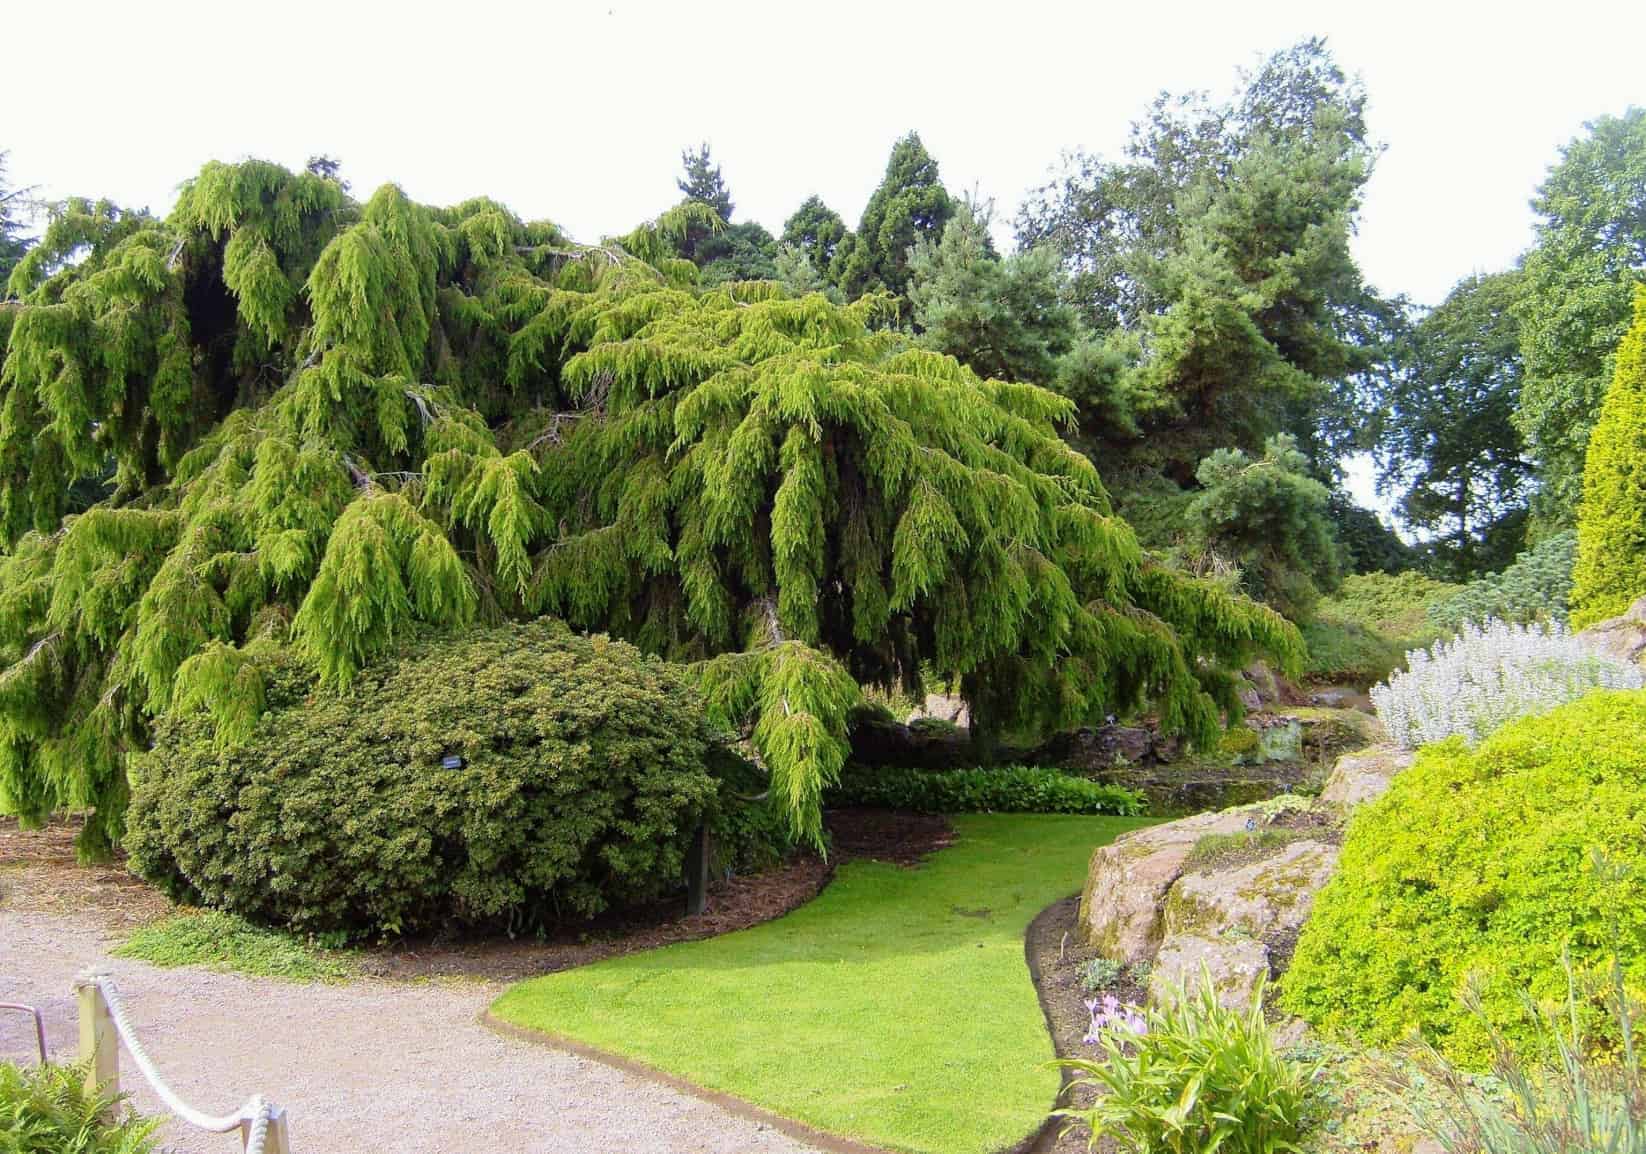 Edinburgh Royal Botanic Gardens